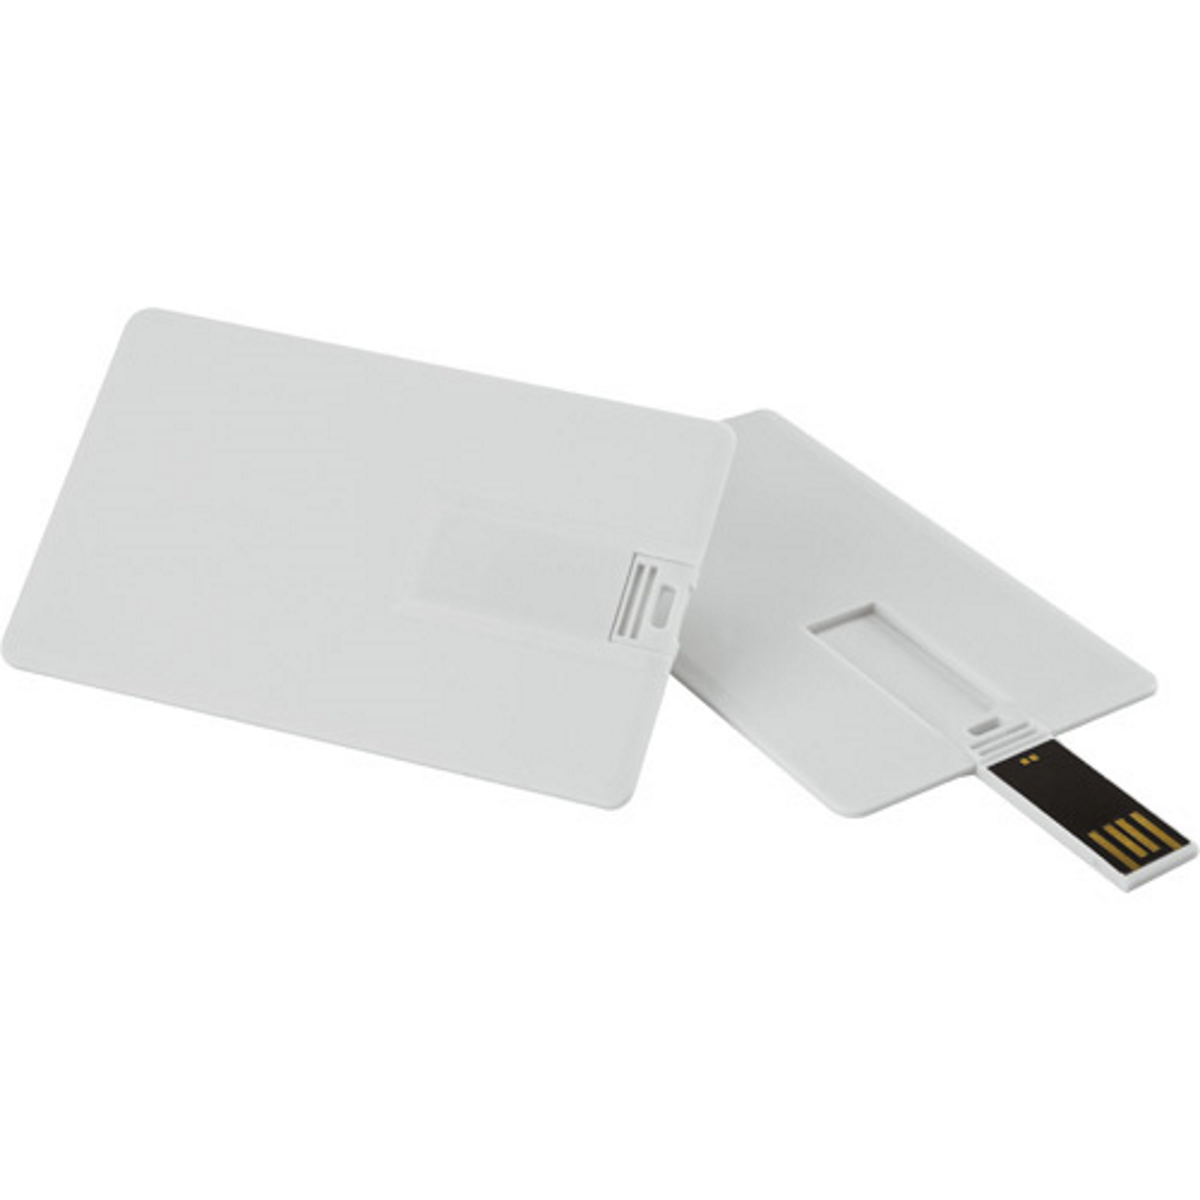 USB GERMANY ® USB-Stick (Weiss, GB) Kreditkarte 16